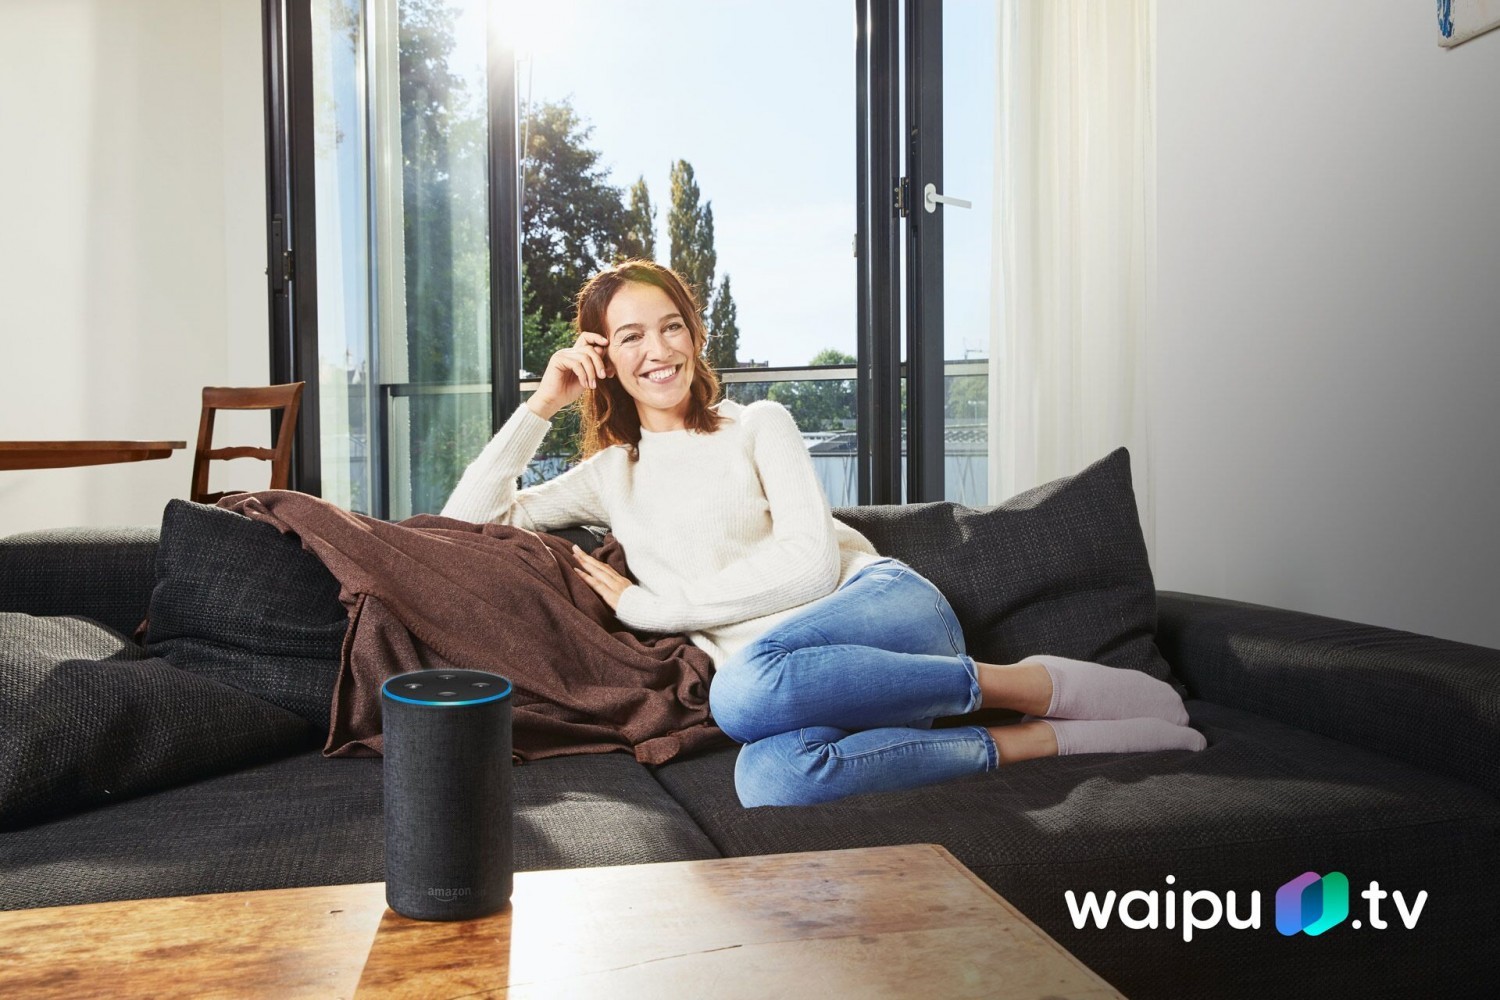 Smart Home Mit der Stimme das Programm ändern: Waipu.tv mit neuer Funktion - News, Bild 1